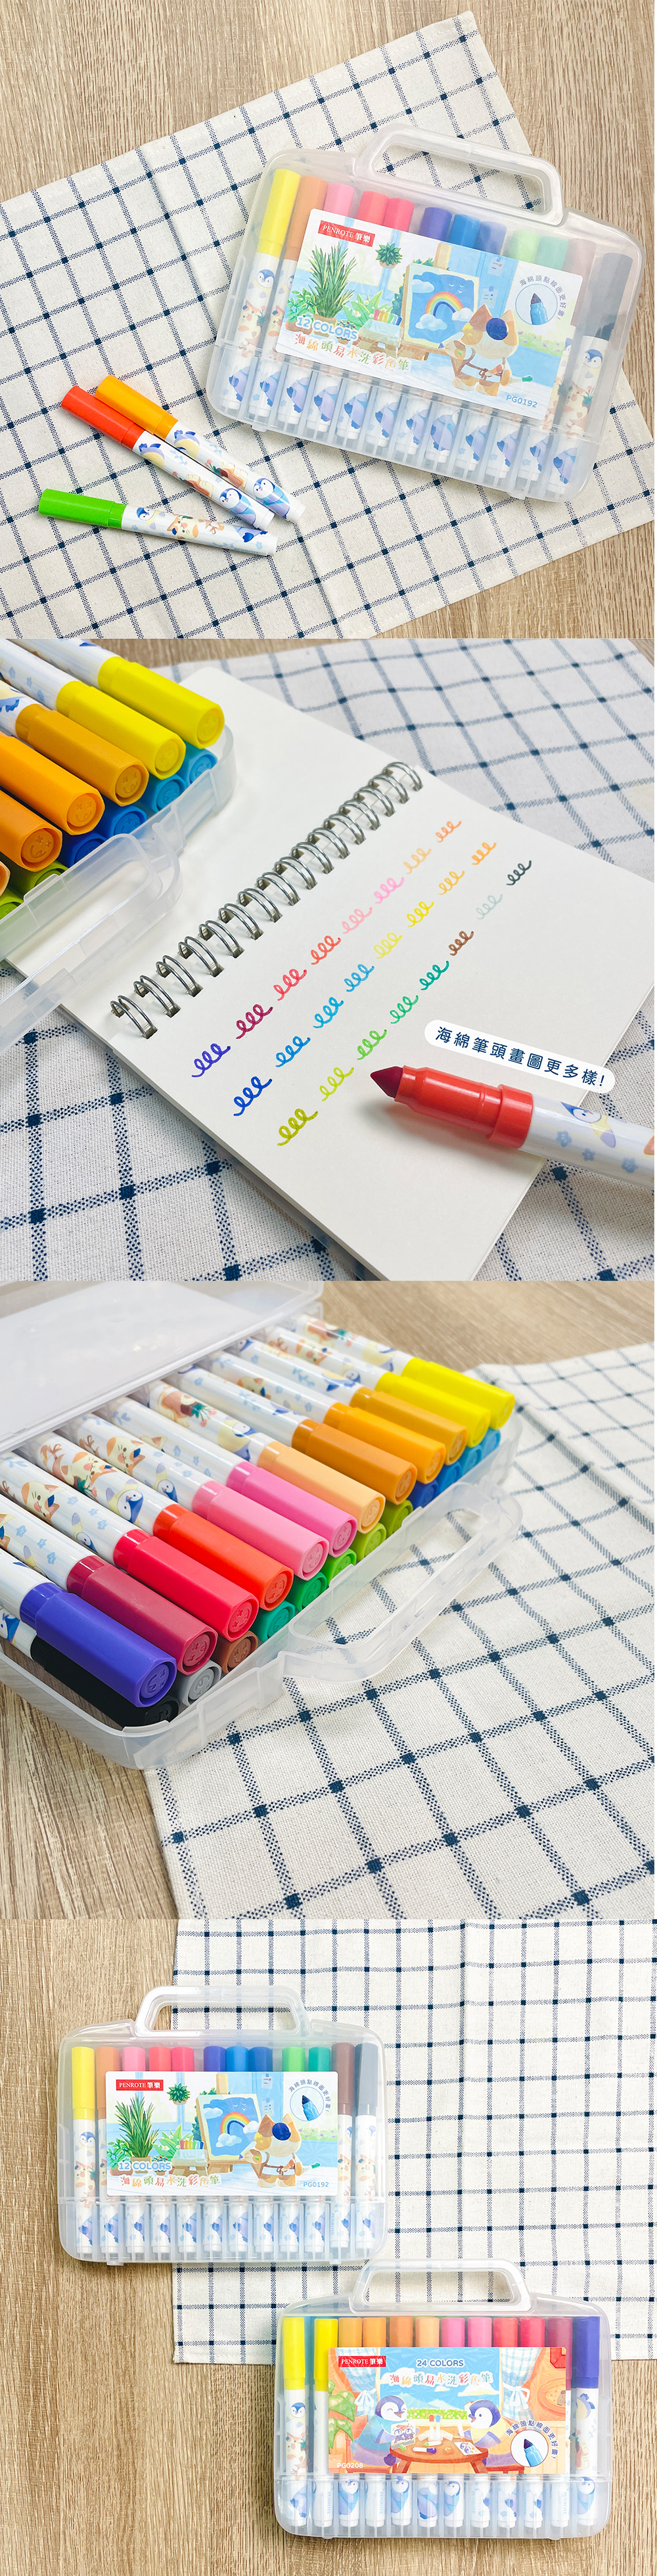 彩色筆 盒裝 24色 彩色筆 12色 彩色筆